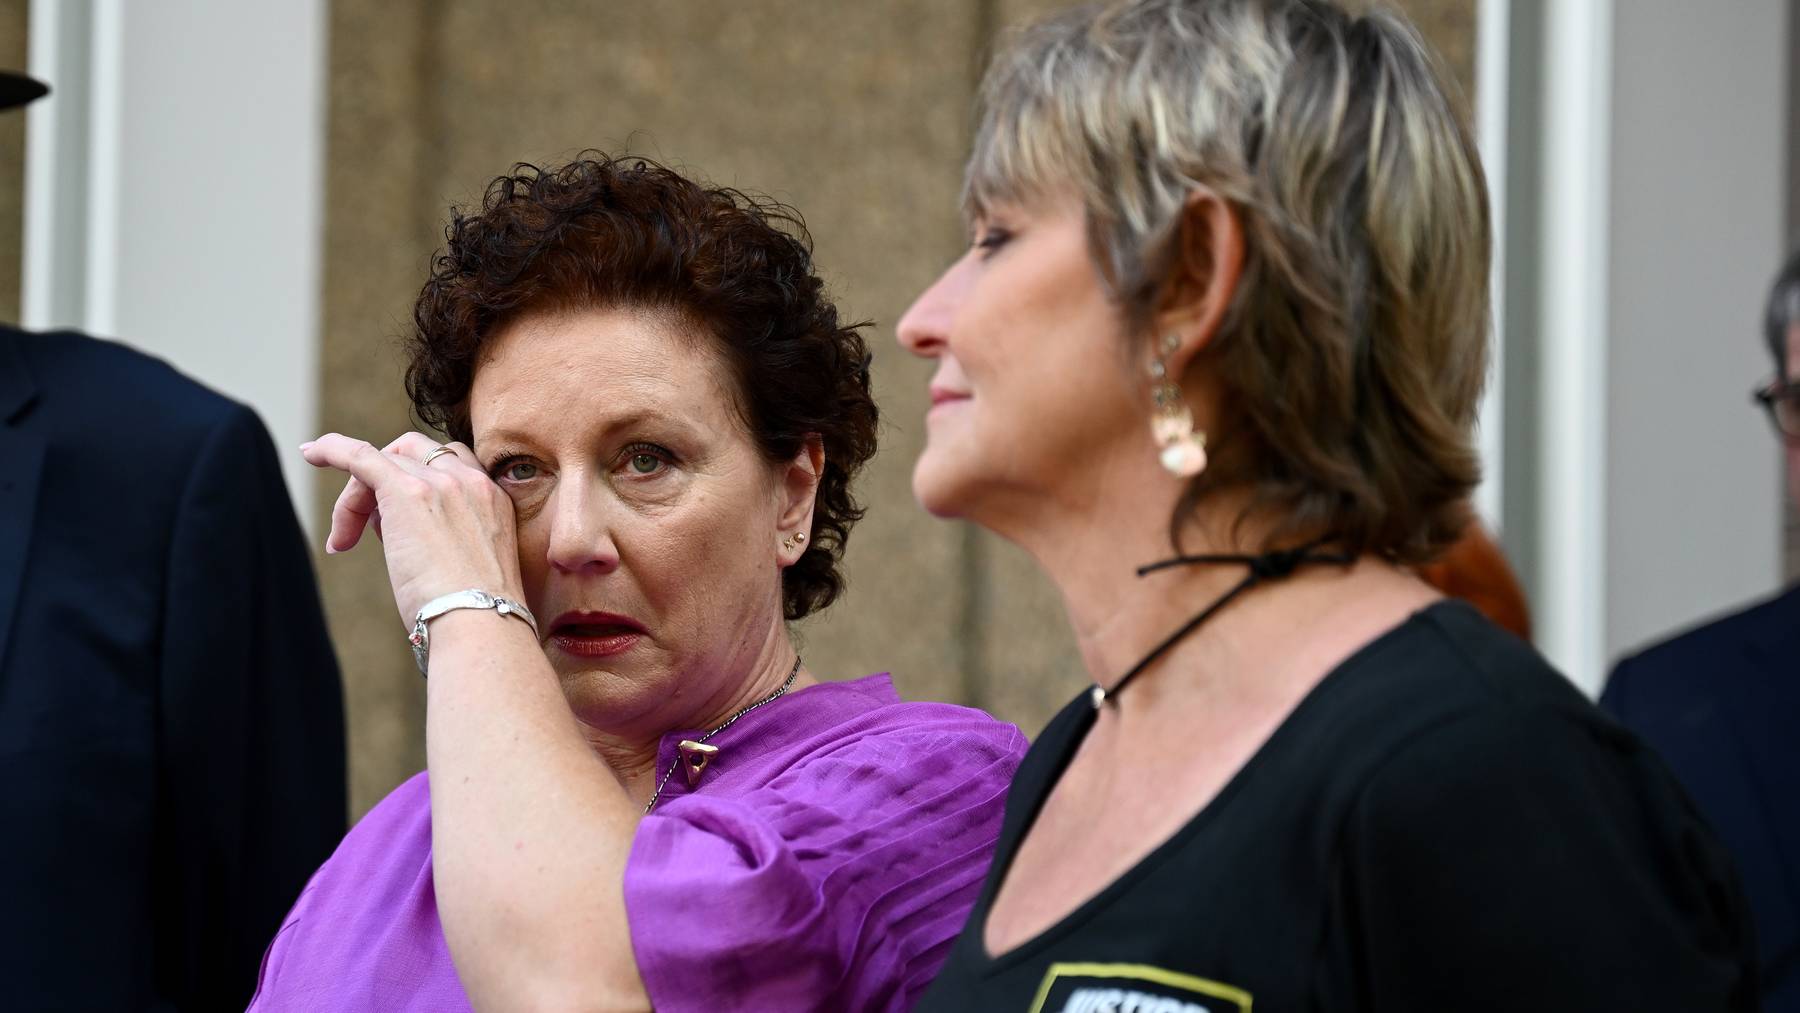 Nach 20 Jahren im Gefängnis ist eine Frau in Australien vom Vorwurf freigesprochen worden, ihre vier Kinder getötet zu haben. Ein Gericht in Sydney hob am Donnerstag ein 2003 gegen Kathleen Folbigg verhängtes Mordurteil auf. (Symbolbild)